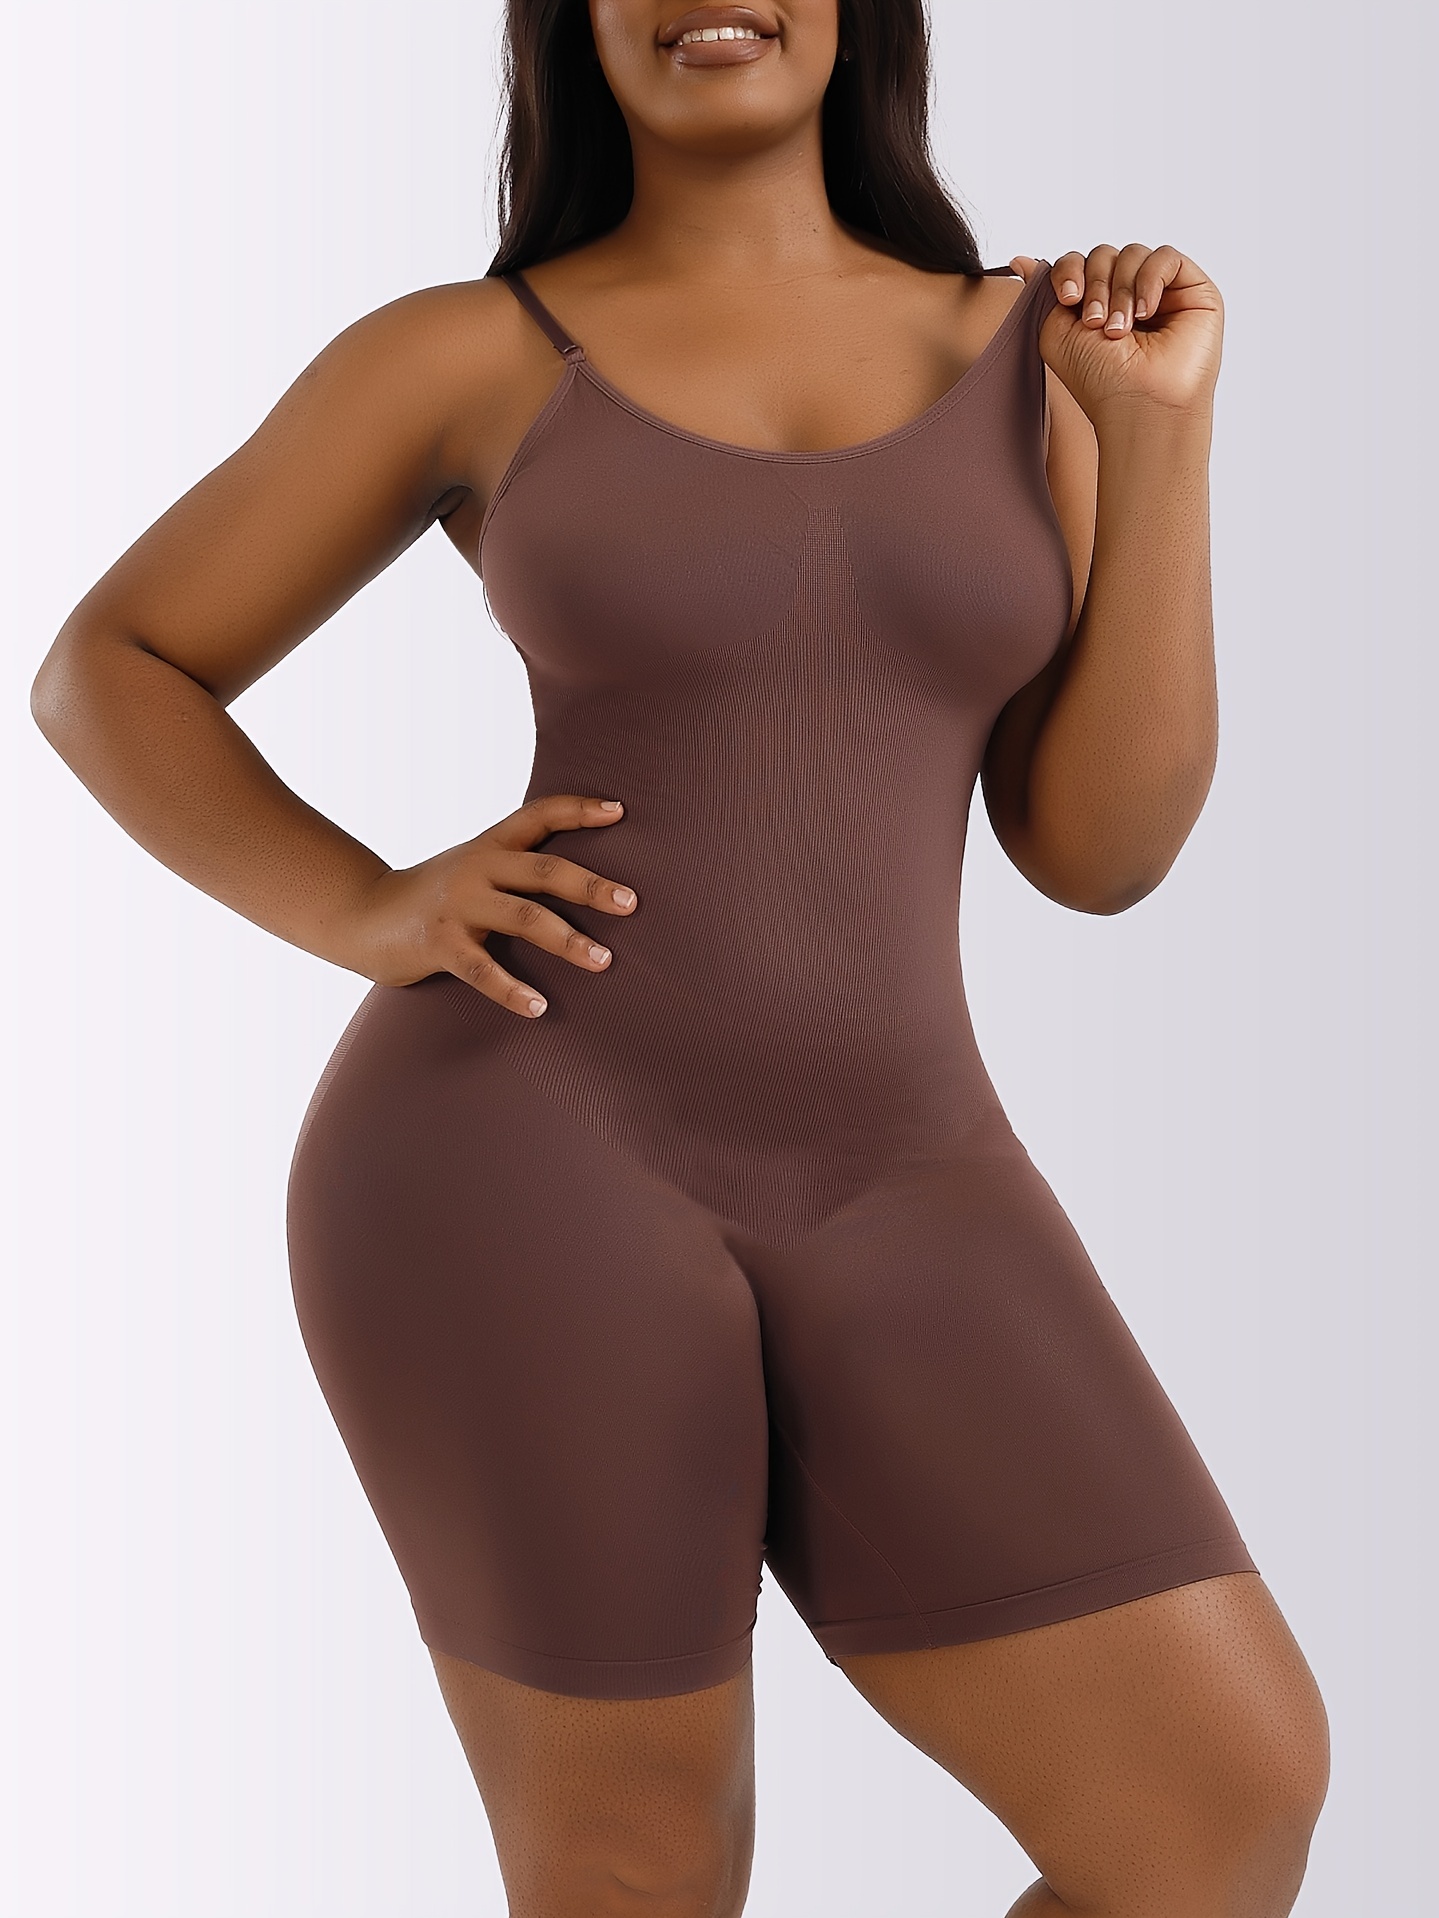  Women's Shapewear Bodysuit Tummy Control Butt Lifter Open Bust  Full Body Shaper Plus Size Shapewear for Women (Color : Skin, Size : 3X- Large) : ביגוד, נעליים ותכשיטים